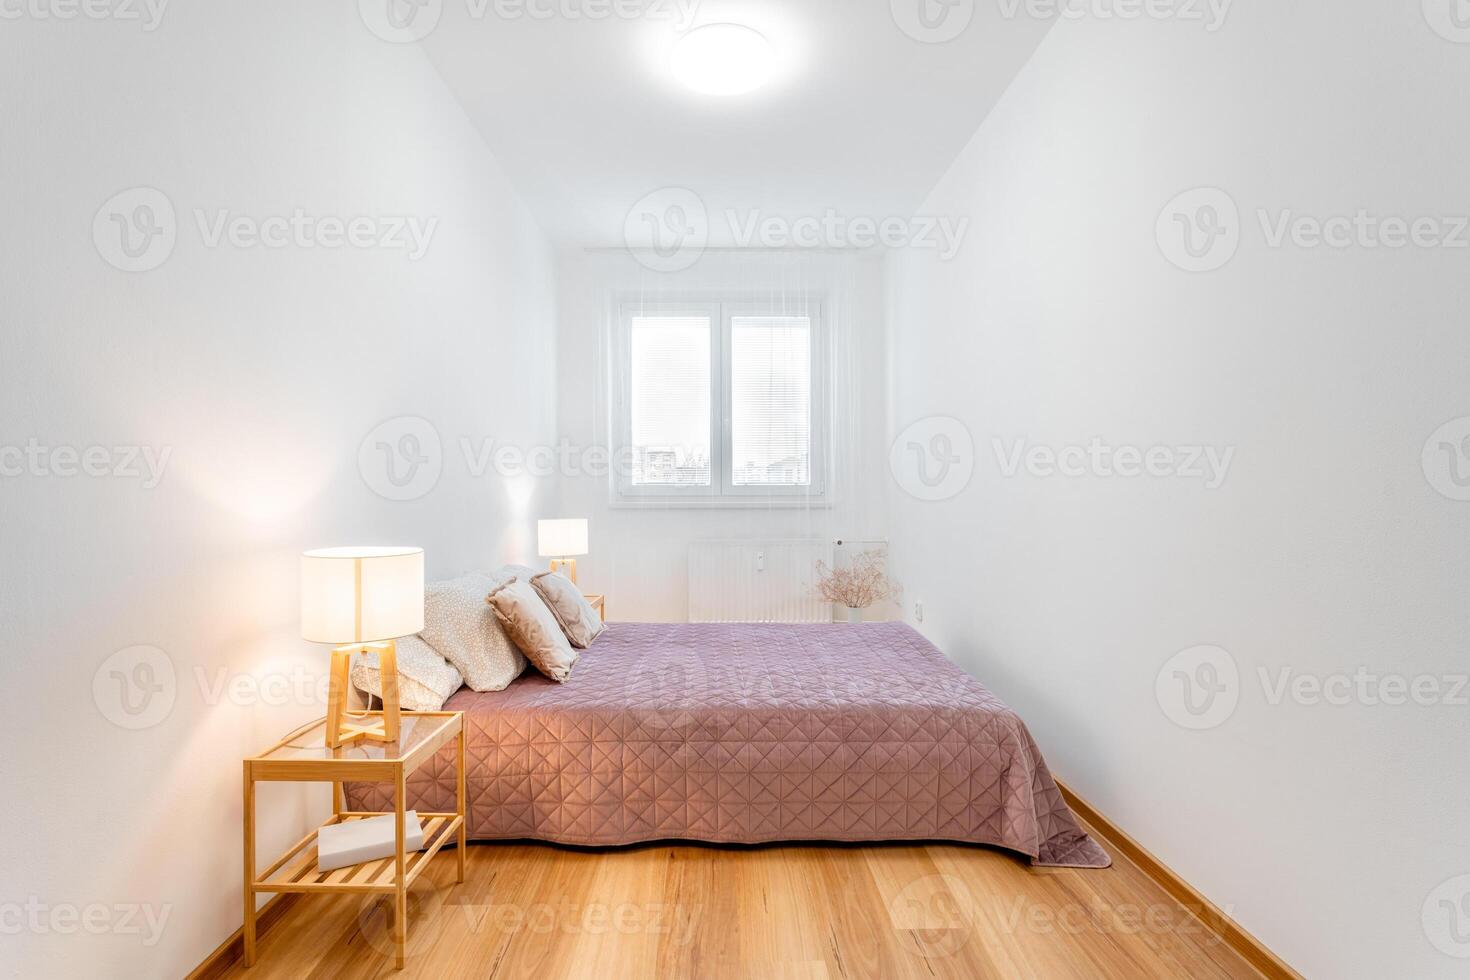 confortable moderne chambre intérieur avec Naturel lumière photo